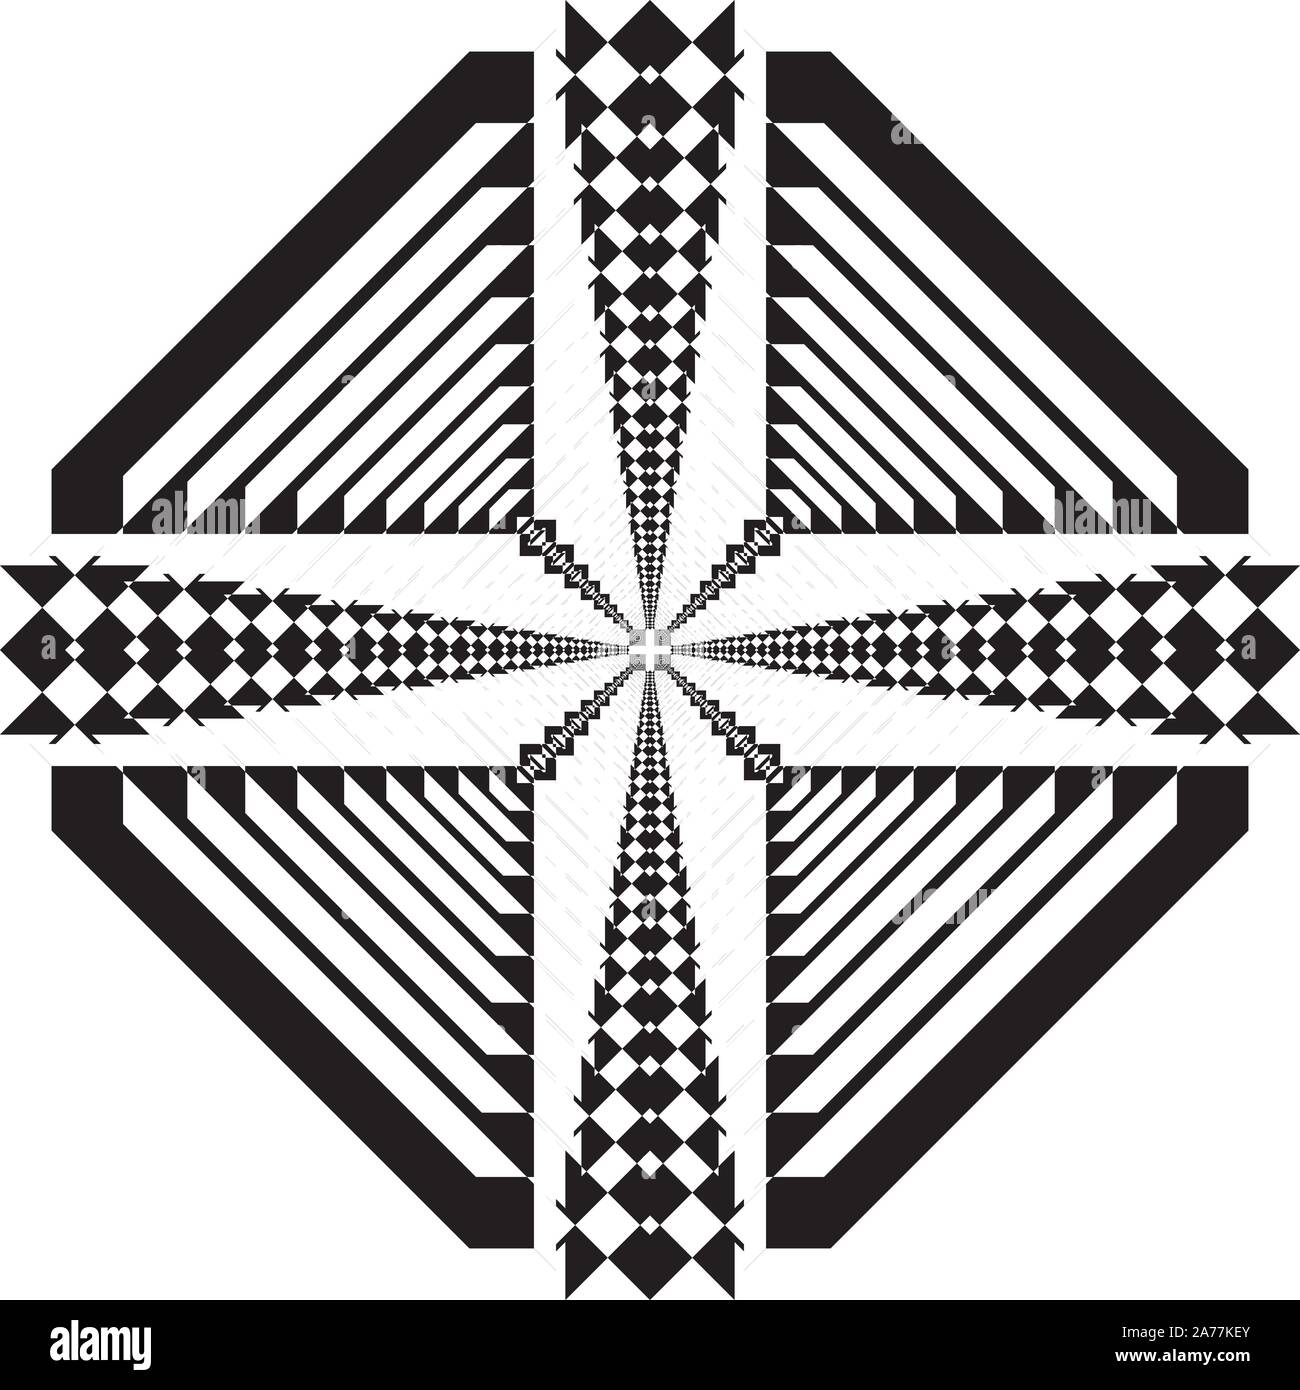 Résumé du projet du pont de toit design arabesque noir sur fond transparent designer cut Illustration de Vecteur